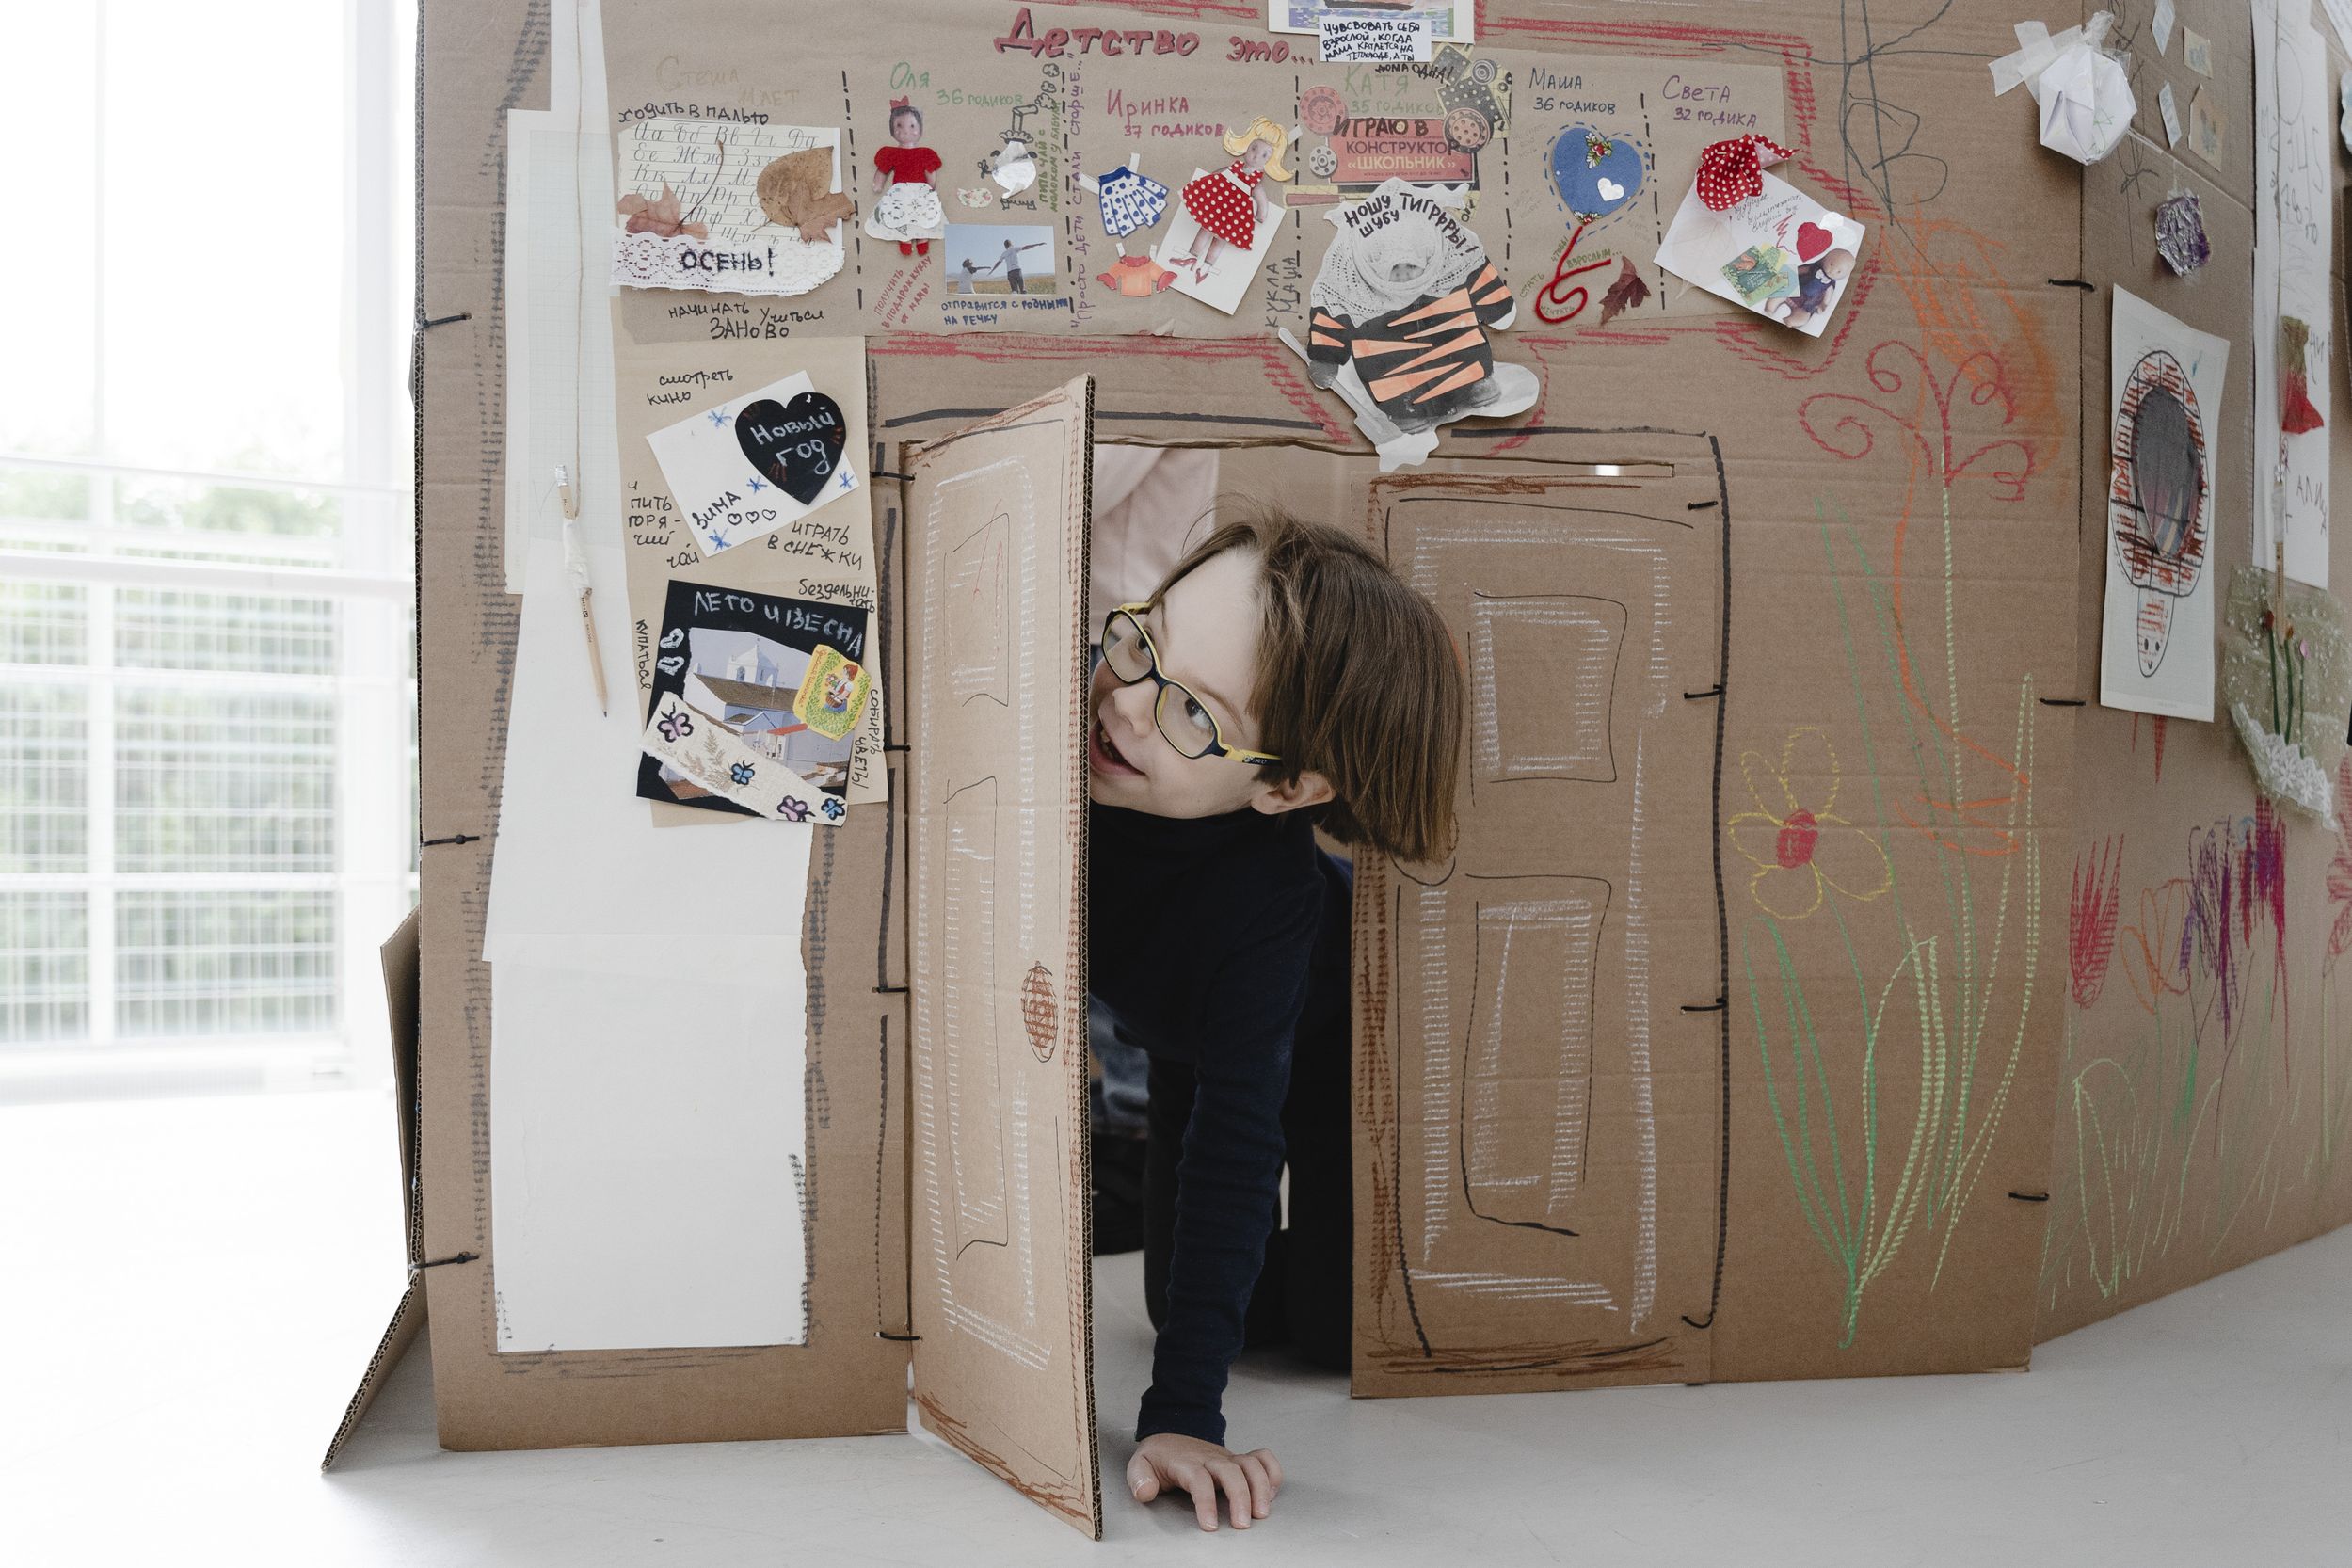 Ребенок в очках выглядывает из двери, сделанной в коробке